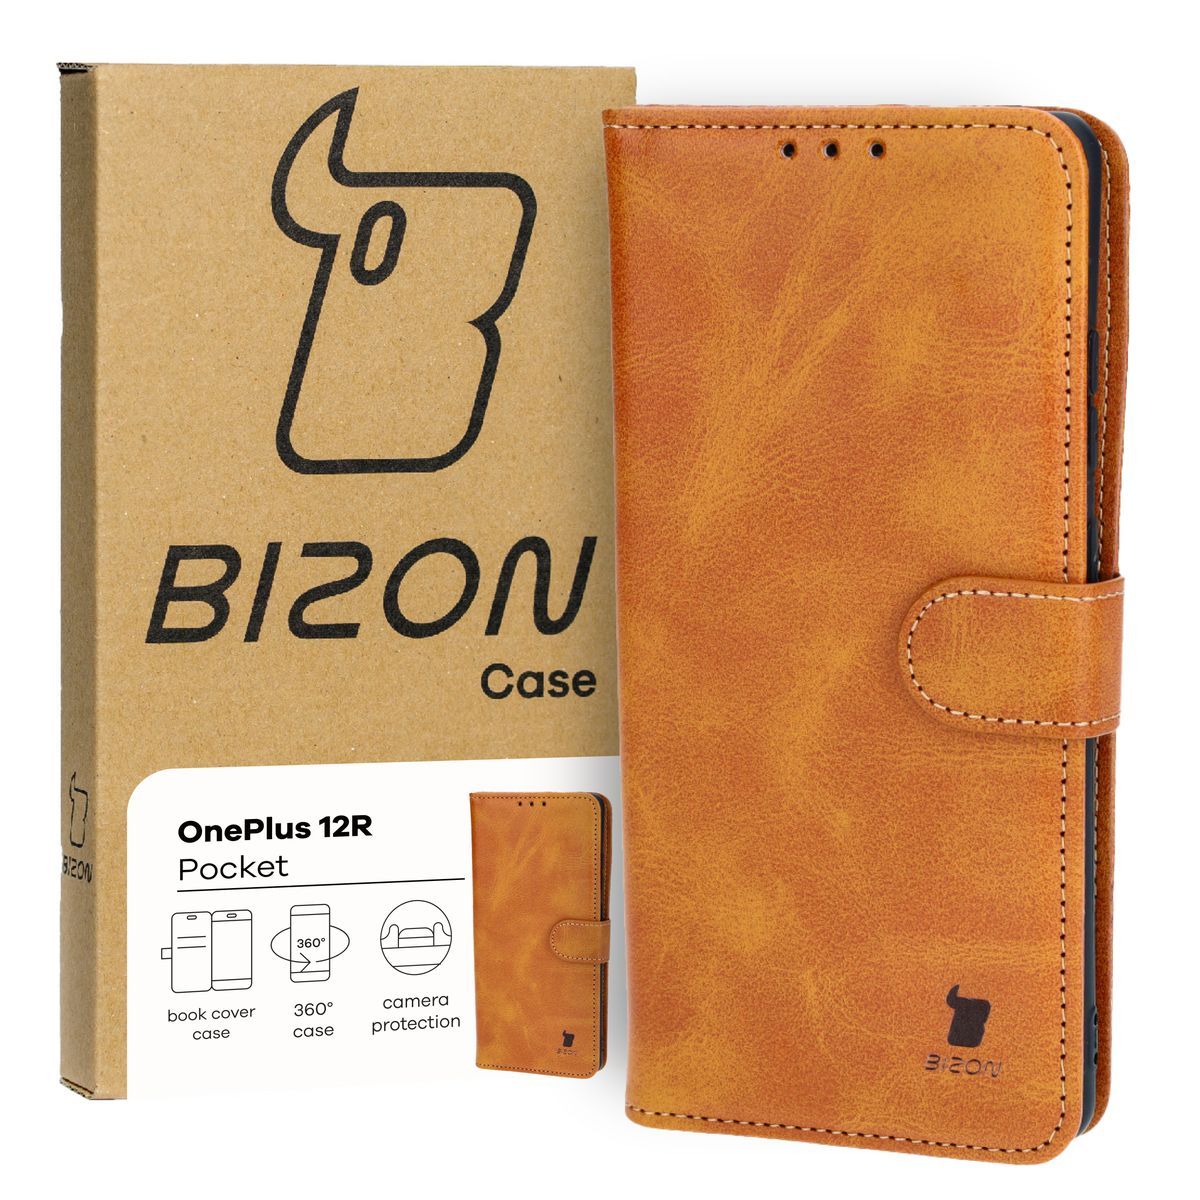 Schutzhülle für OnePlus 12R, Bizon Case Pocket, Braun